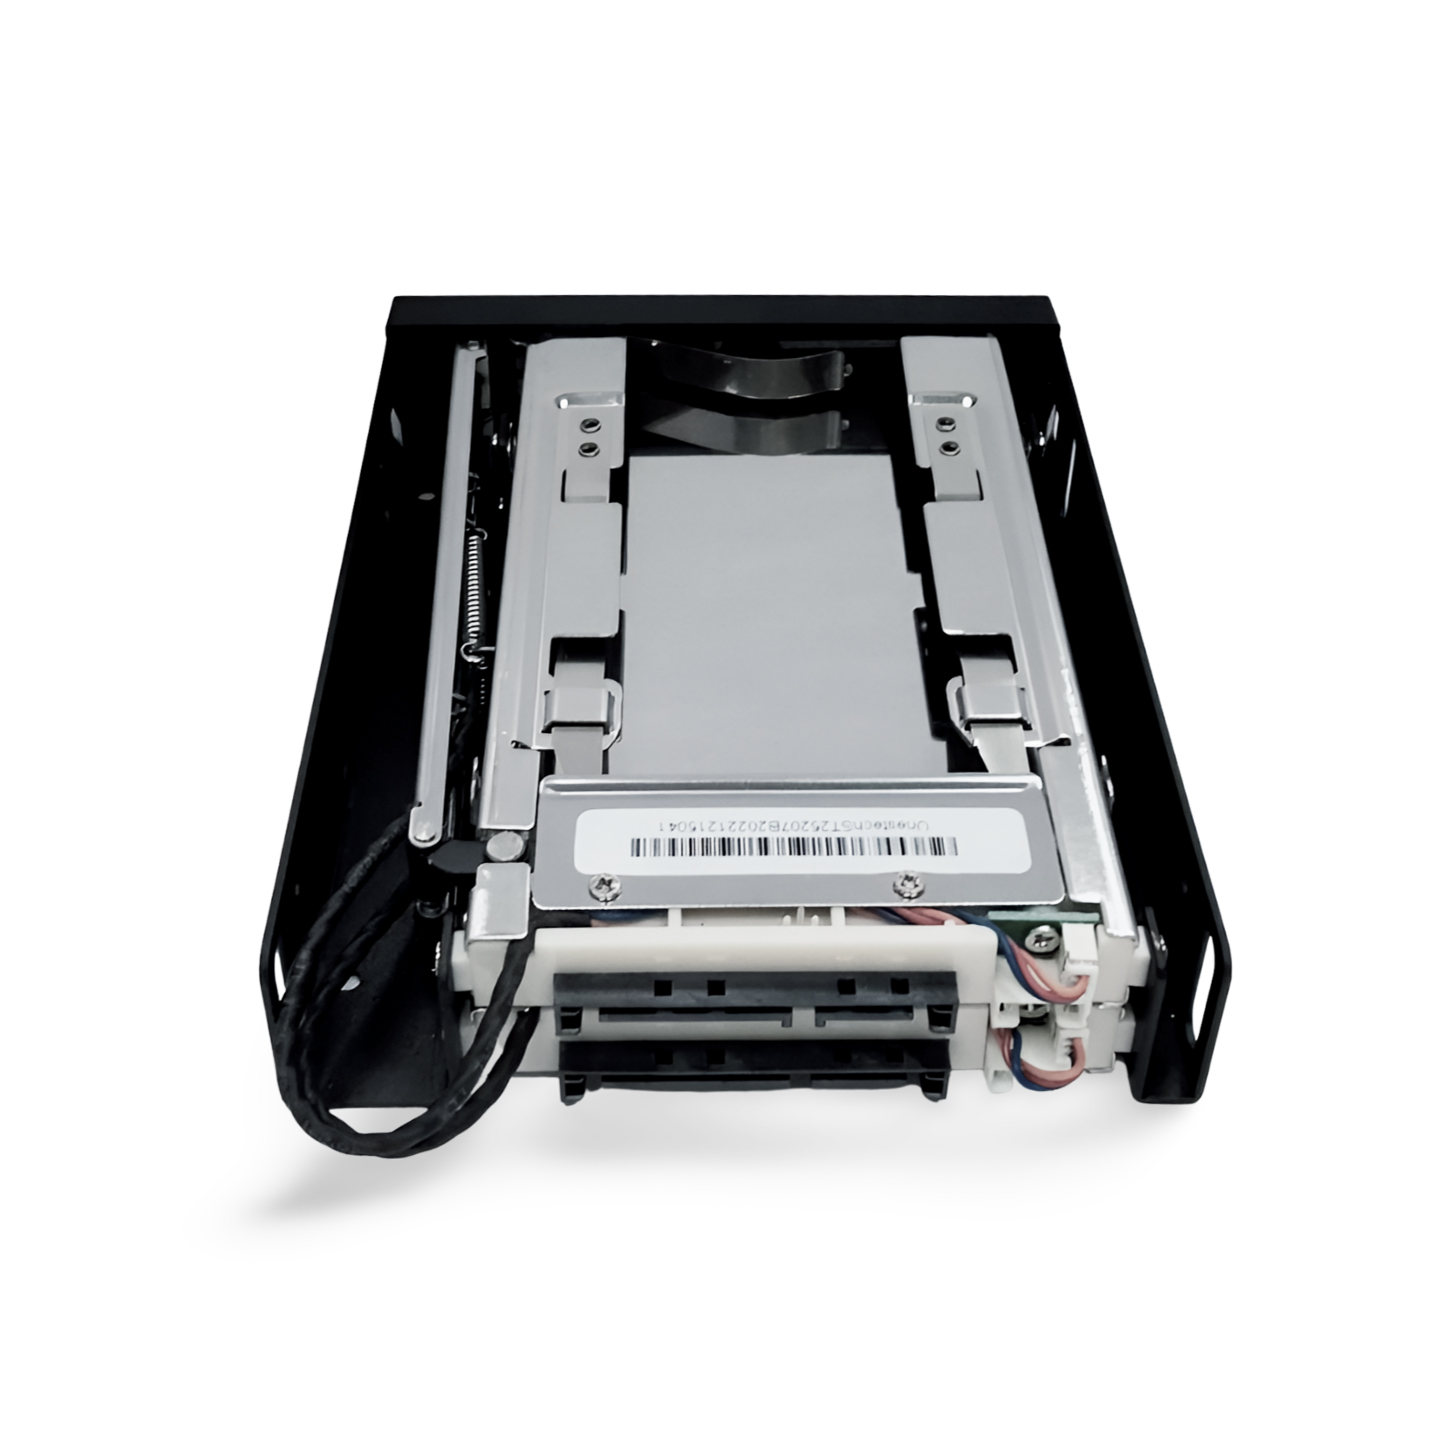 Unestech 免工具热插拔设计双层2.5寸SATA软驱位硬盘抽取盒